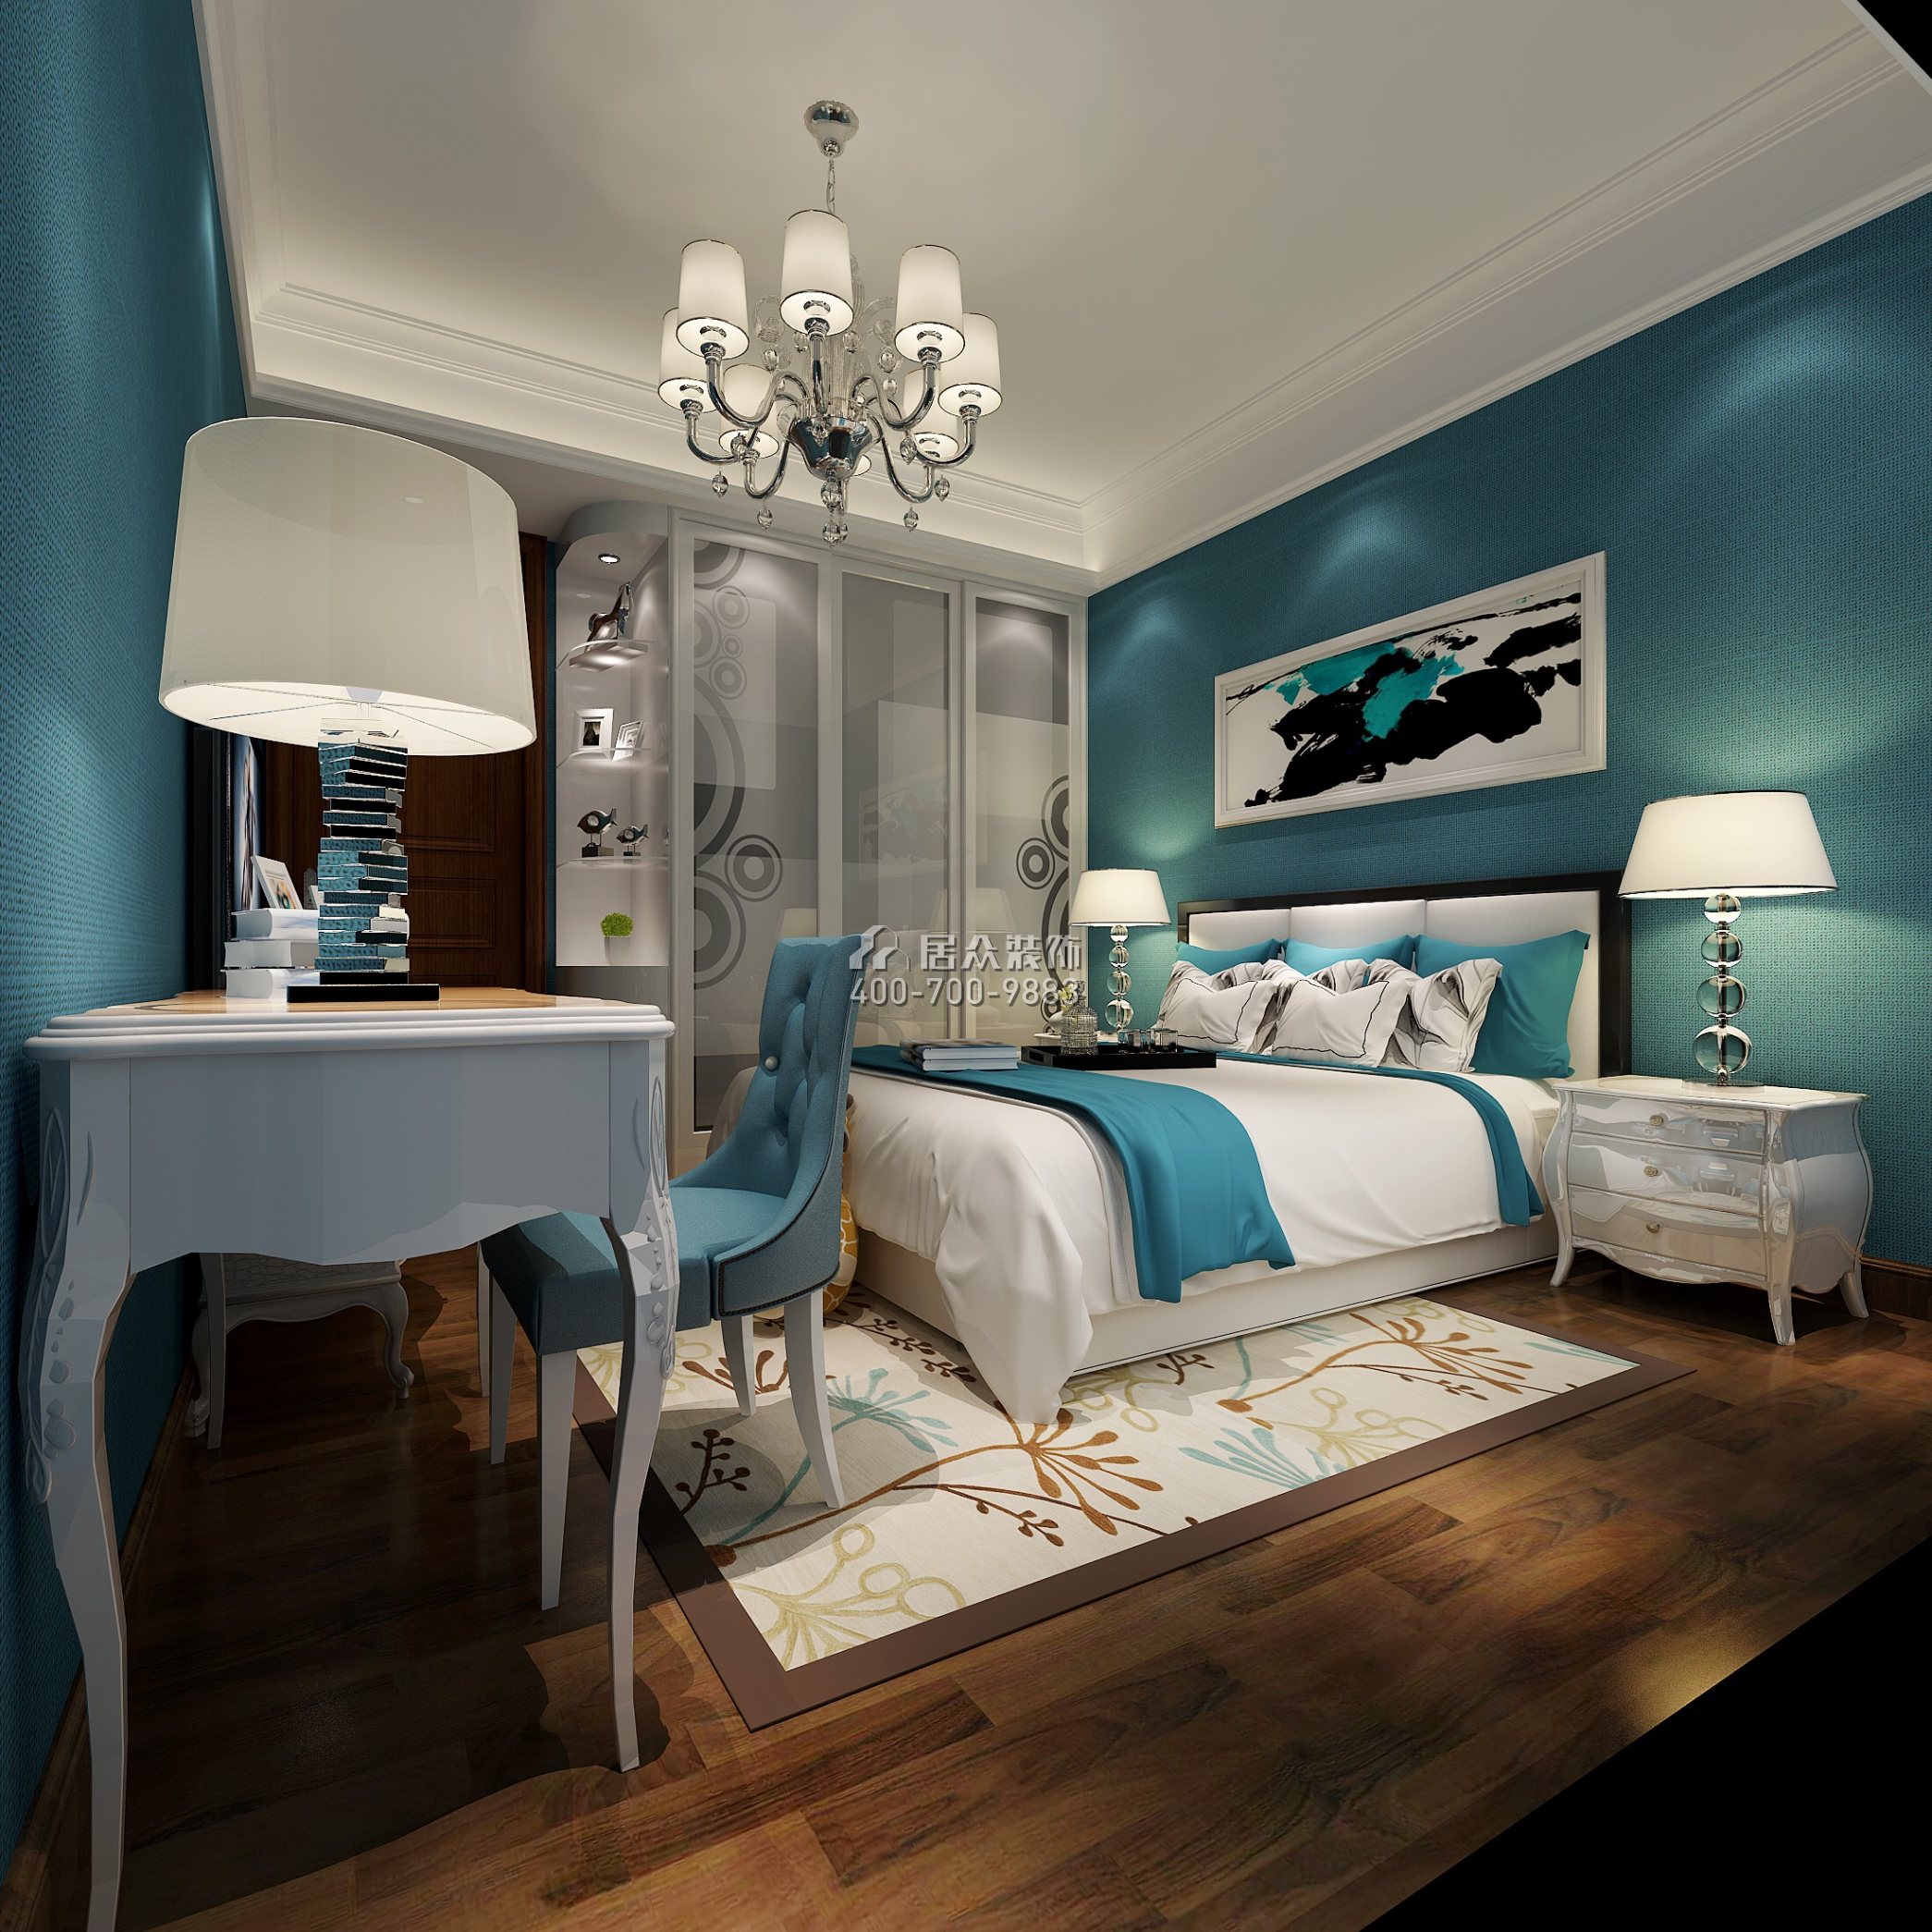 雅居乐花冠集192平方米欧式风格平层户型卧室装修效果图